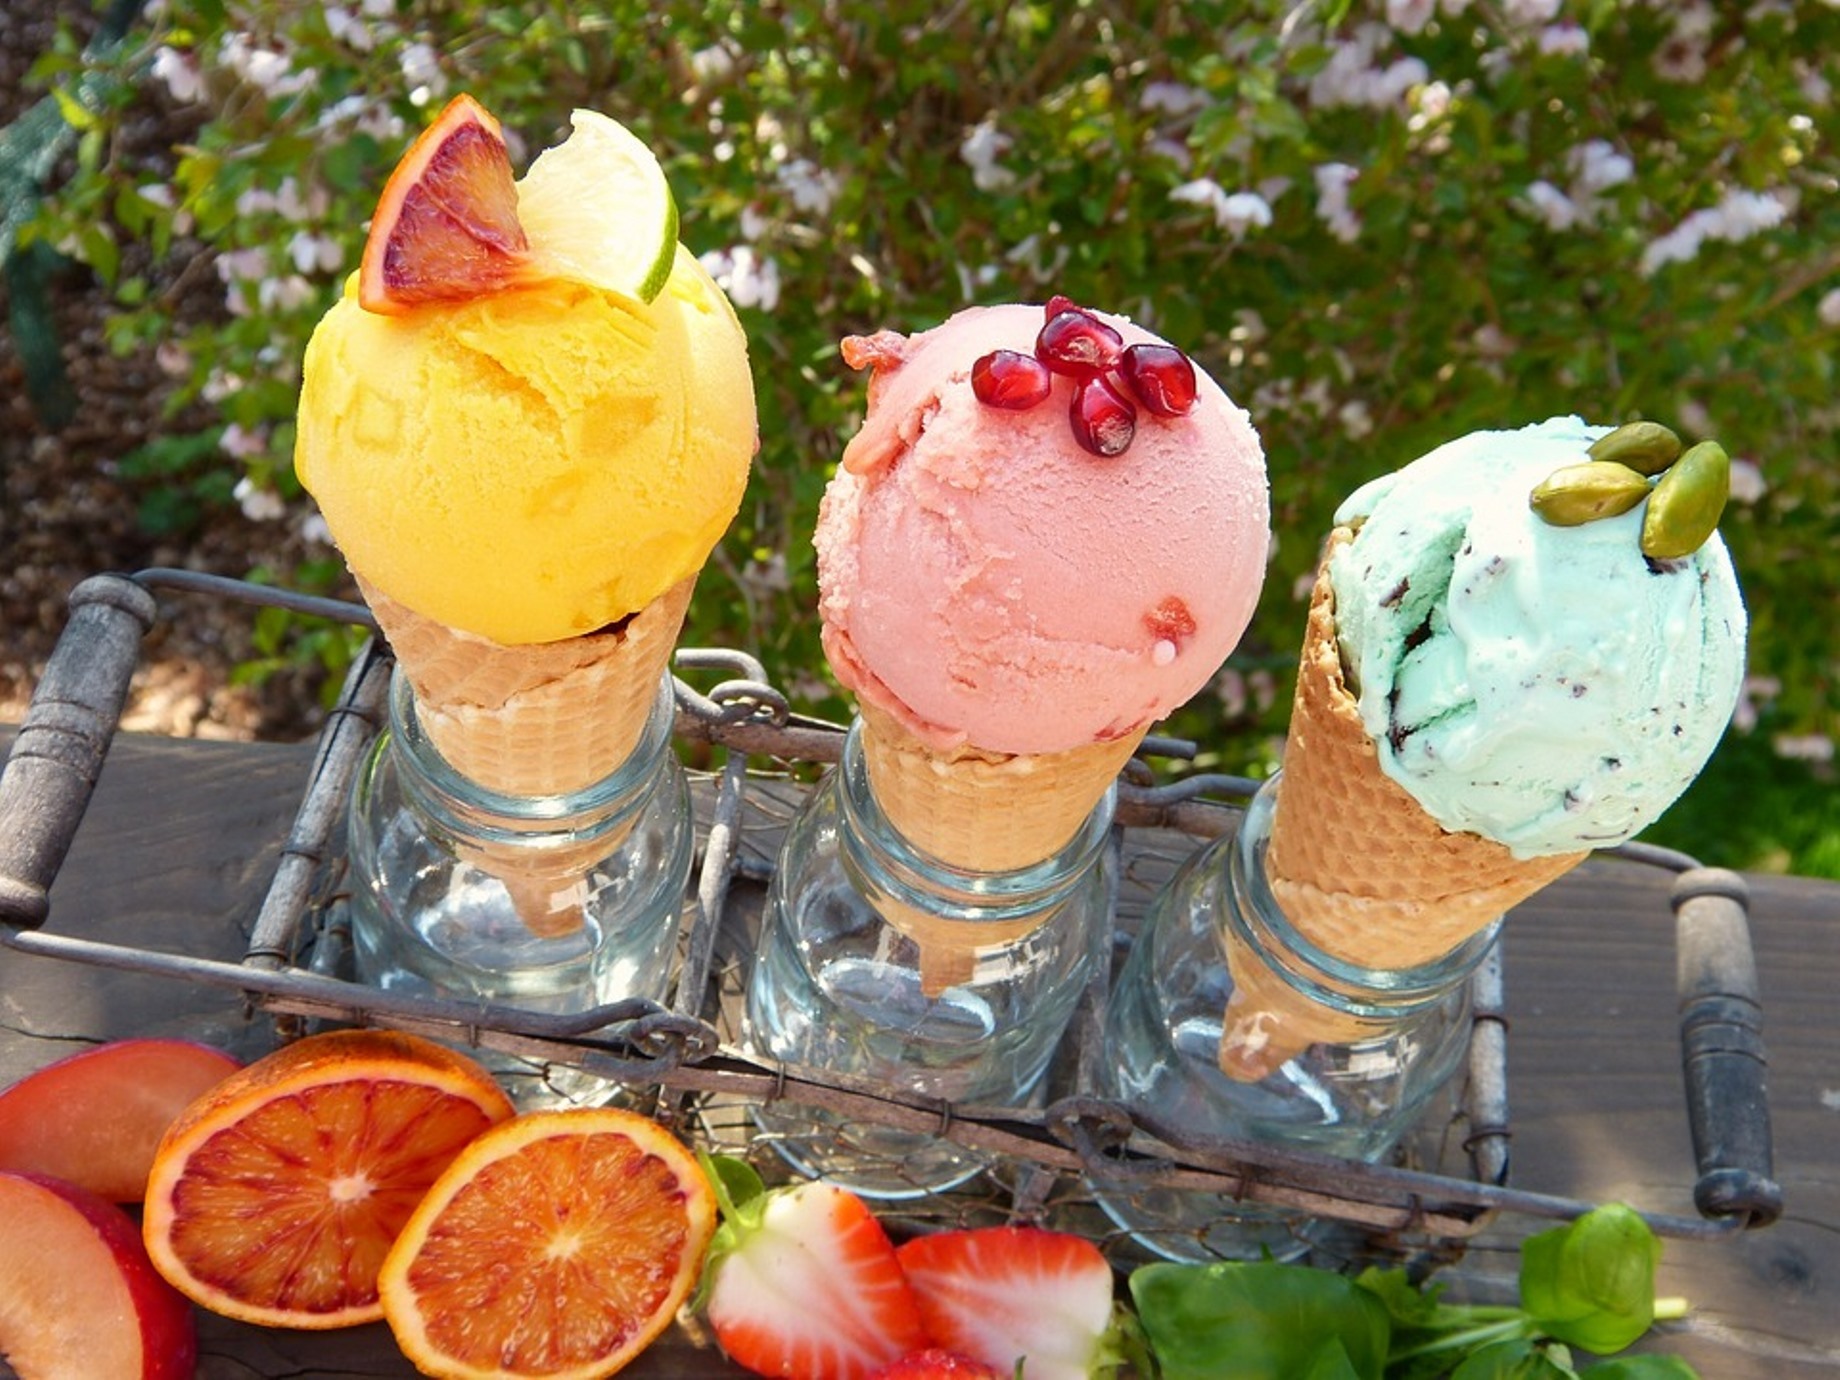 大膽標示每「桶」冰淇淋240大卡！美國冰淇淋品牌Halo Top用２招，成功打造「網紅冰淇淋」